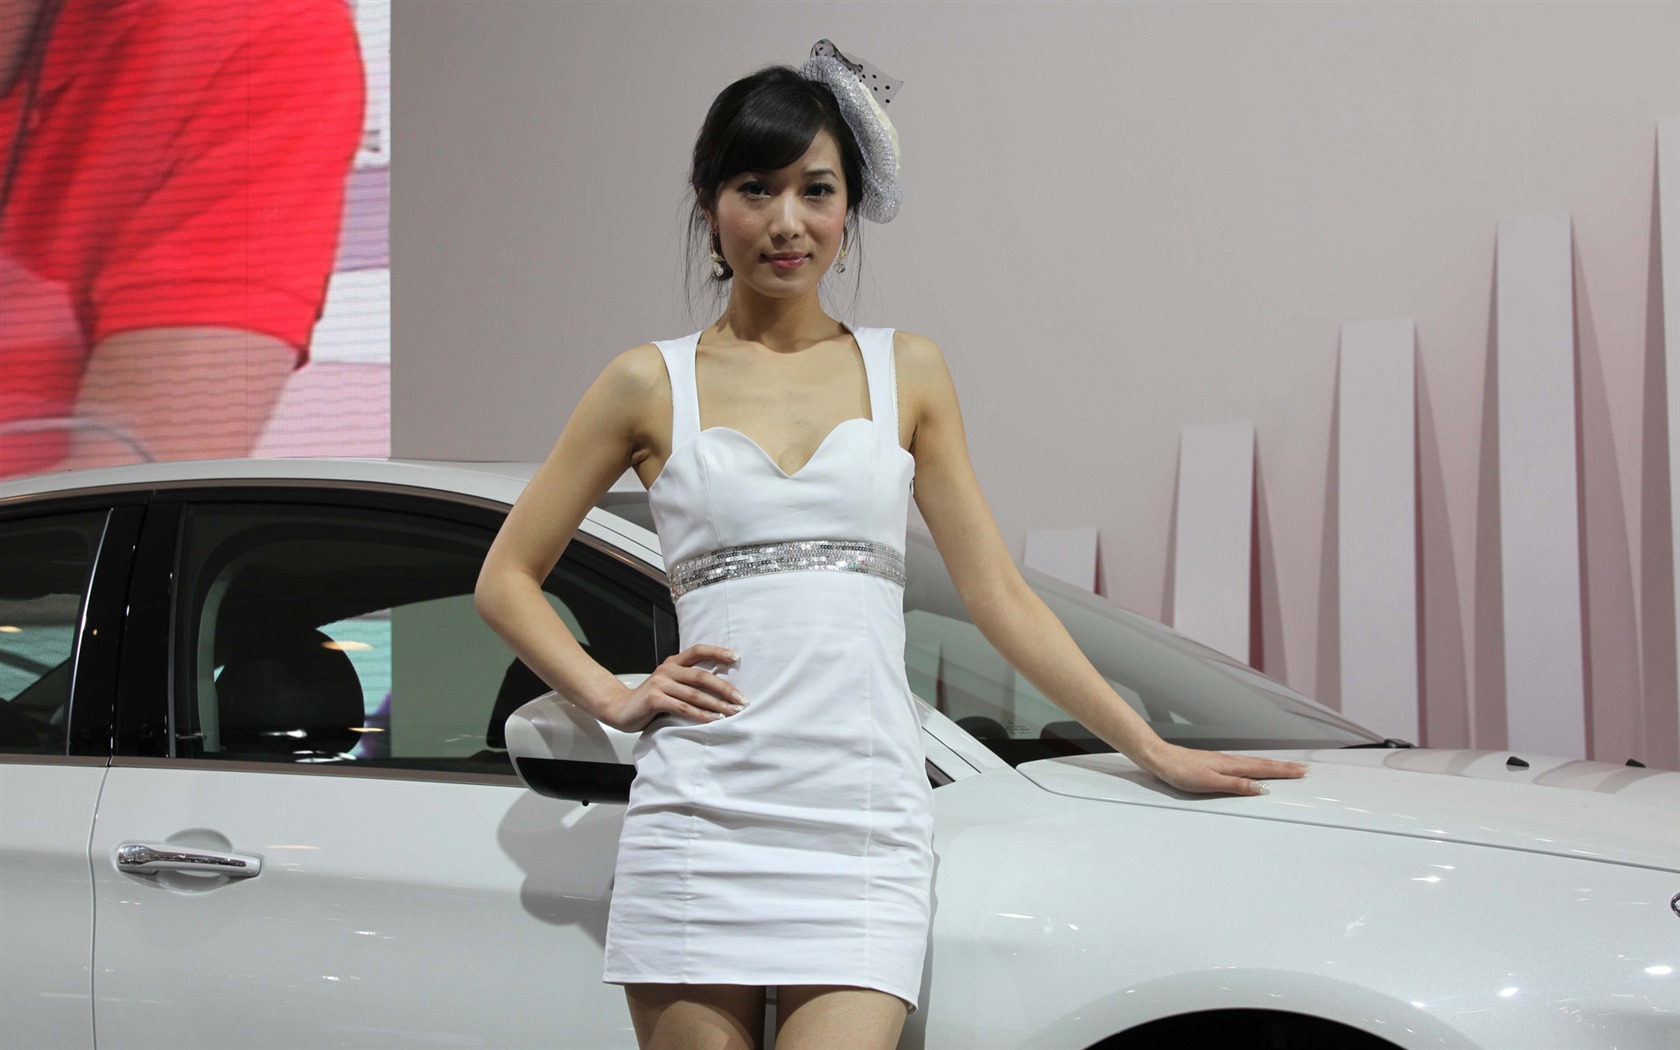 2010 v Pekingu Mezinárodním autosalonu krása (2) (vítr honí mraky práce) #33 - 1680x1050